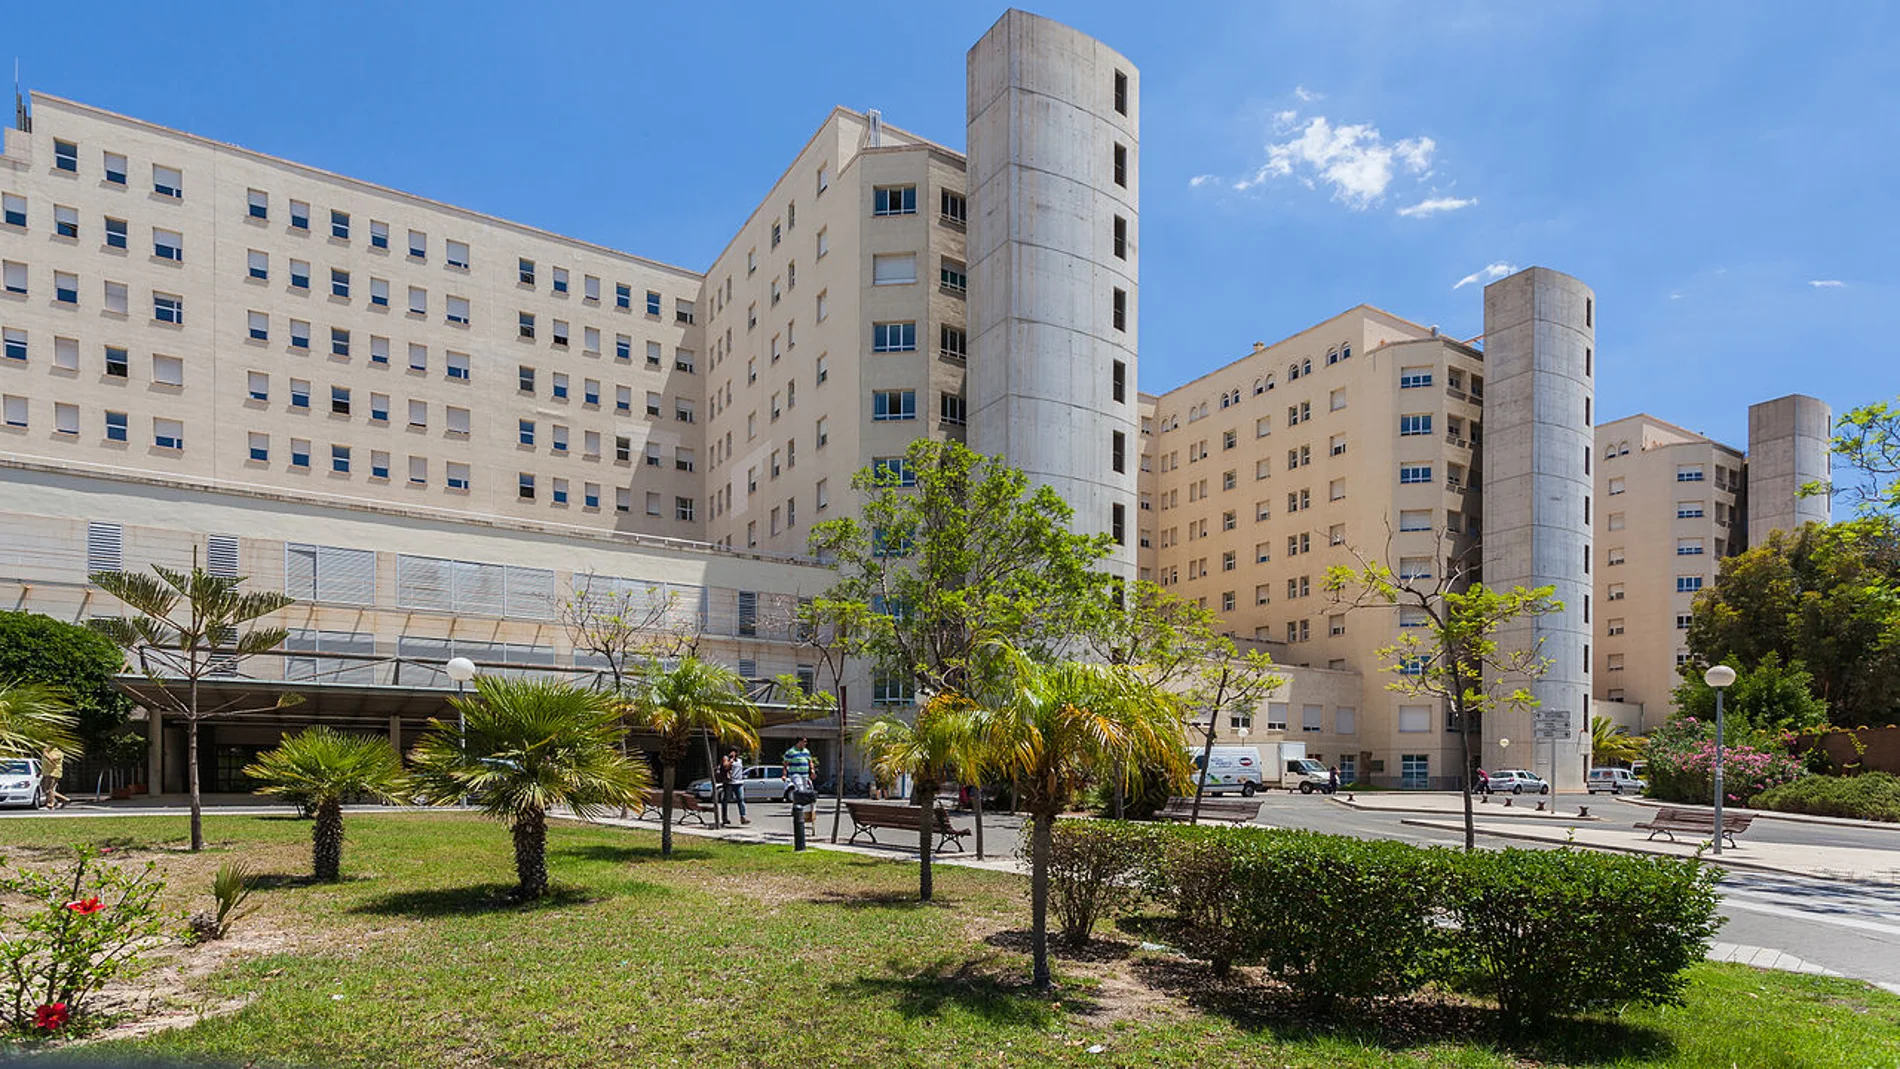 El hospital General de Alicante